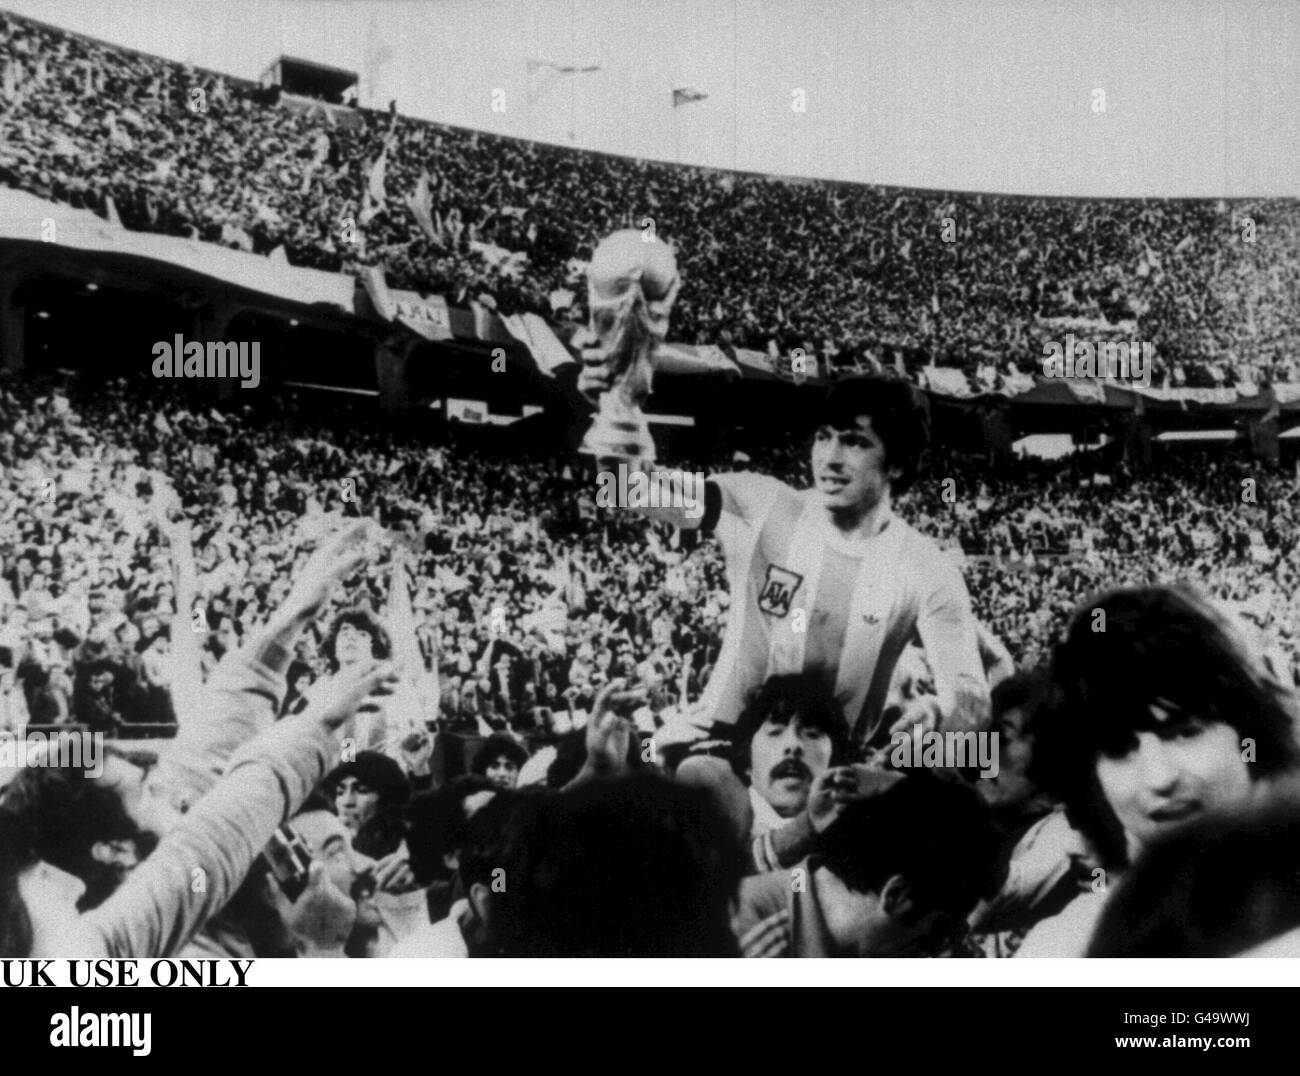 PA NEWS PHOTO 27/6/78 UK : Utilisez uniquement l'équipe de football d'ARGENTINE, LE CAPITAINE DANIEL PASSARELLA EST EFFECTUÉ SUR LES ÉPAULES DE FANS COMME IL LE MONTRE FIÈREMENT LE TROPHÉE DE LA COUPE DU MONDE DE LA FIFA, son équipe a gagné 3-1 EN FINALE DE LA COUPE DU MONDE DE 1978 SUR L'Allemagne de l'OUEST AU RIVER PLATE STADIUM À BUENOS AIRES, ARGENTINE Banque D'Images